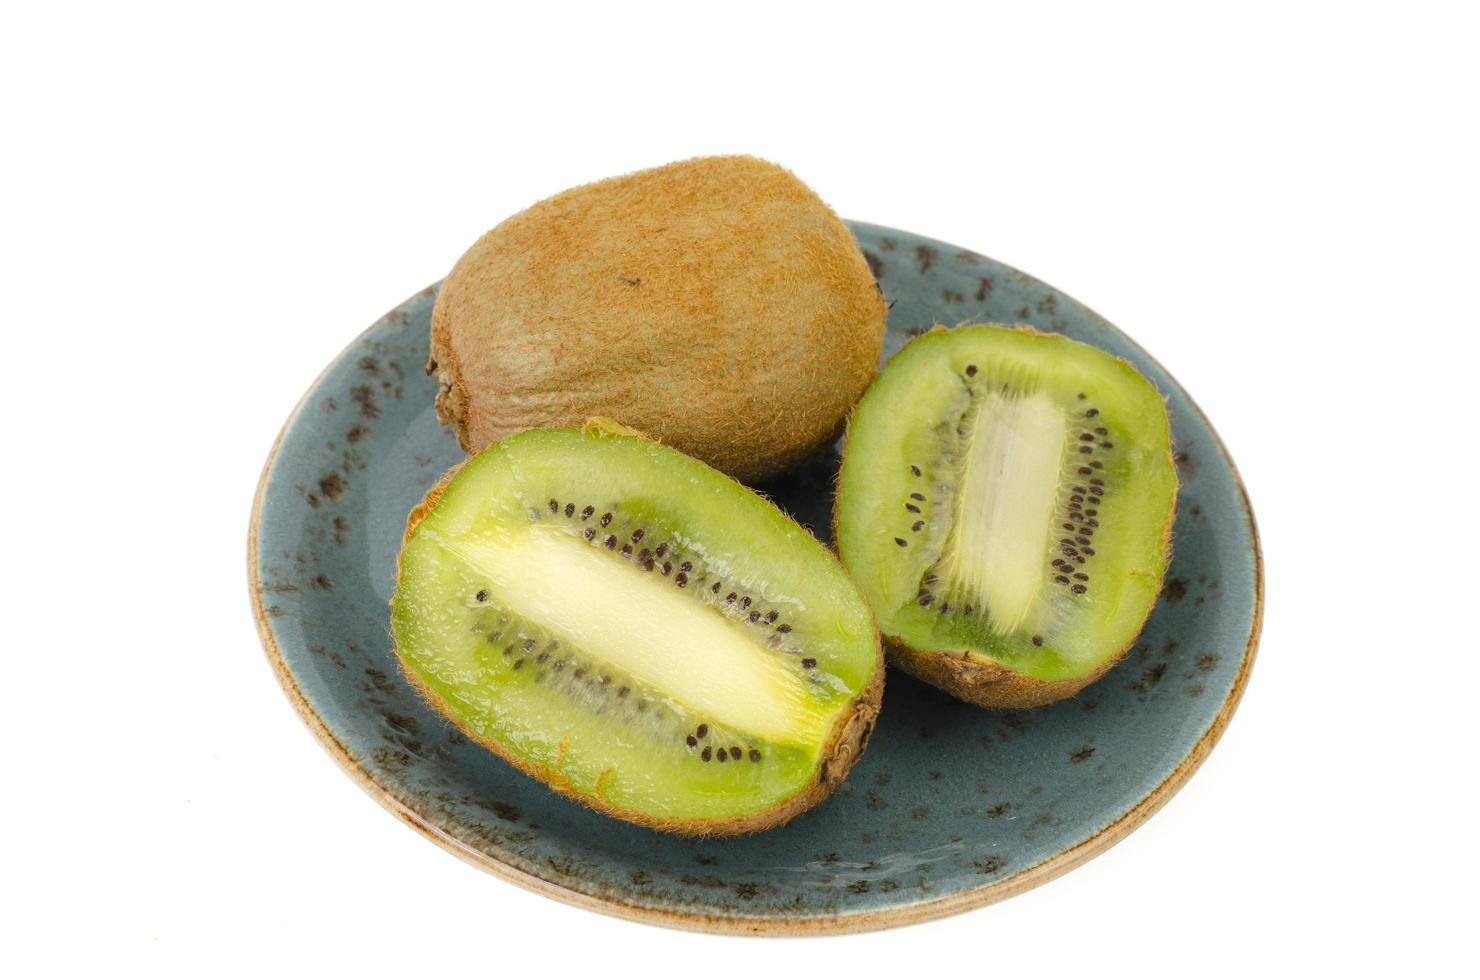 kiwi en rodajas, pulpa verde dulce y jugosa. foto de estudio